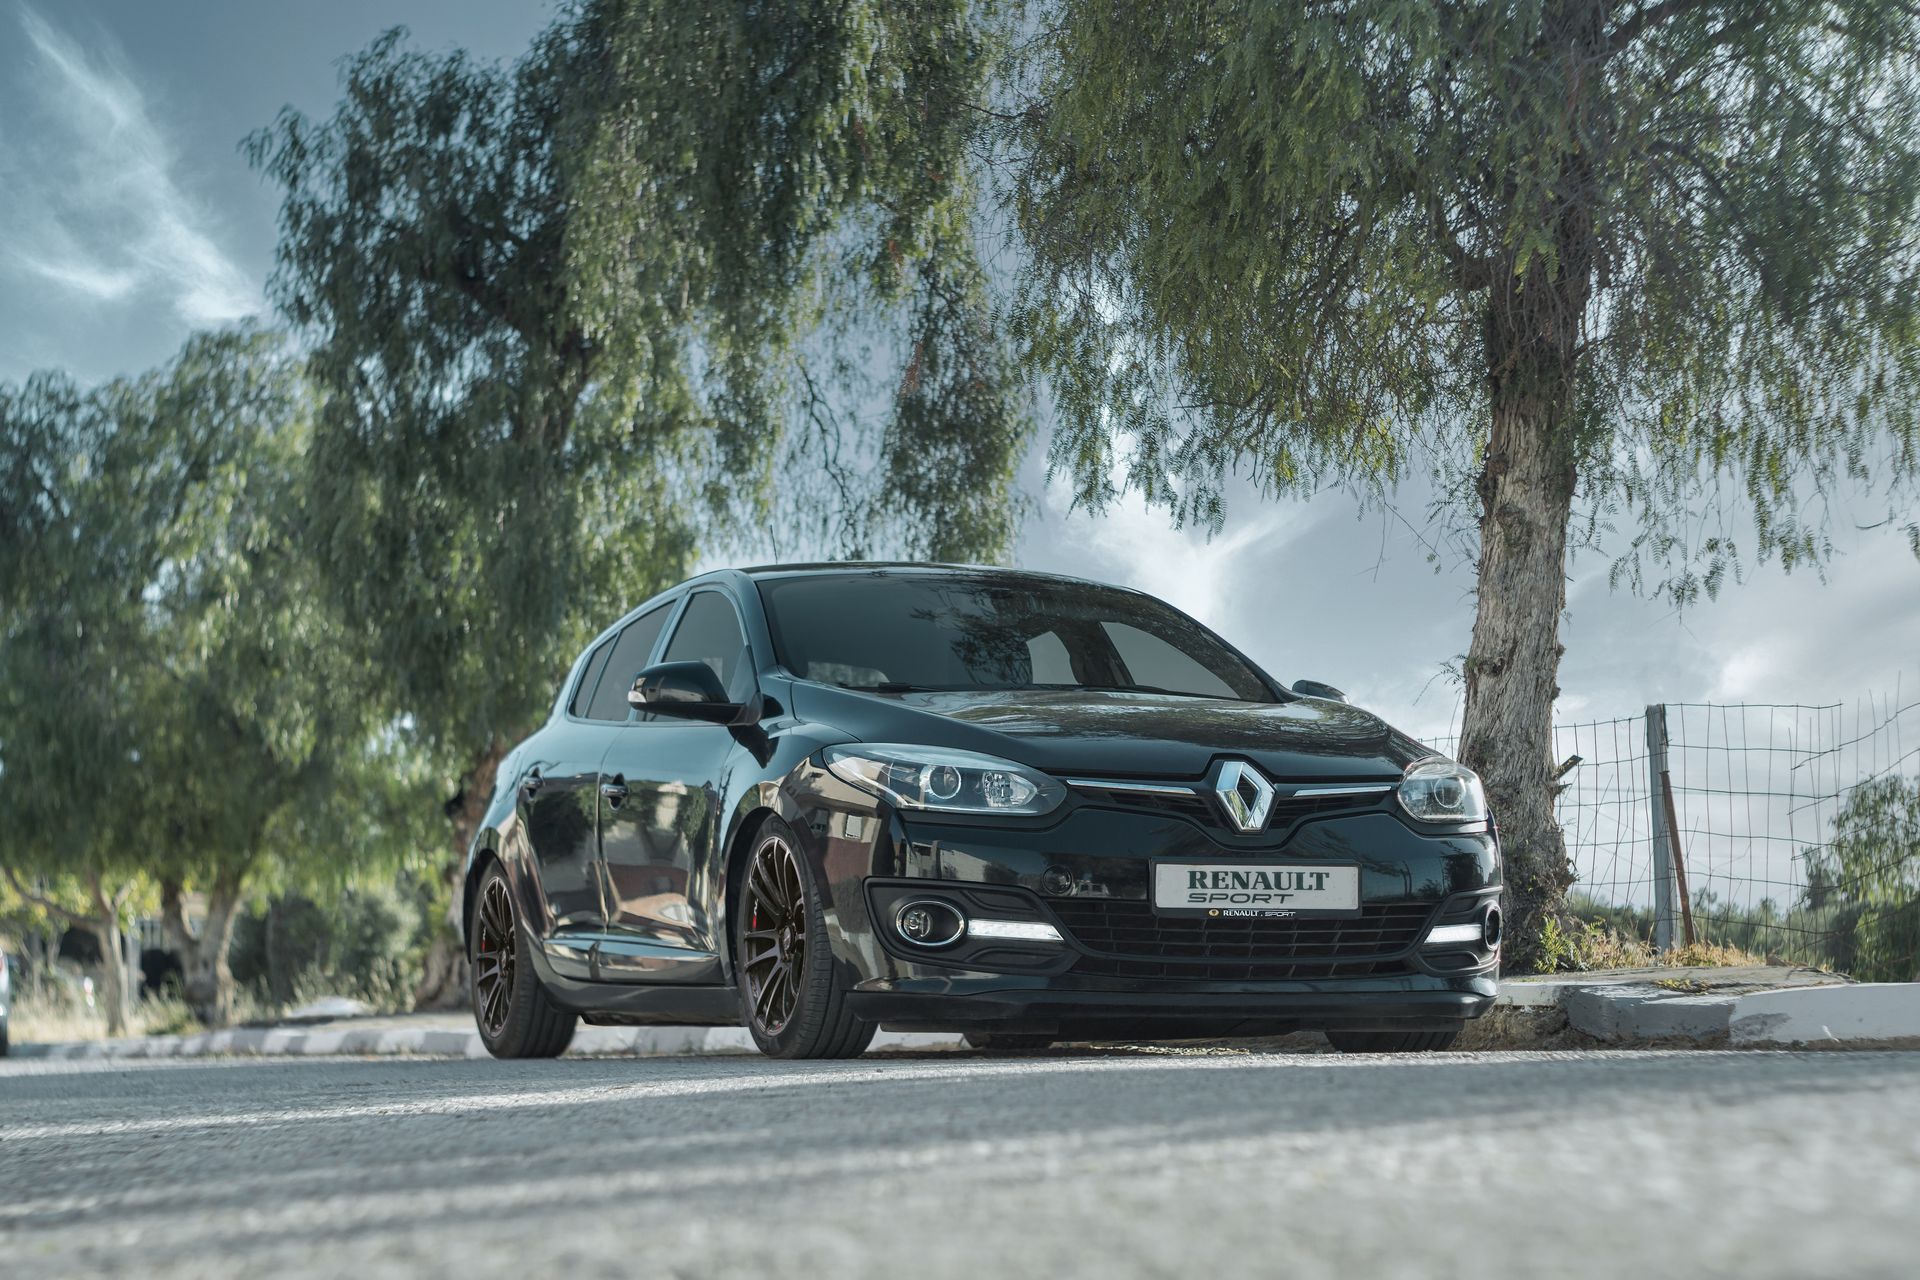 Renault'dan Türkiye'de bir ilk: Yenilenmiş ikinci el araç satışı